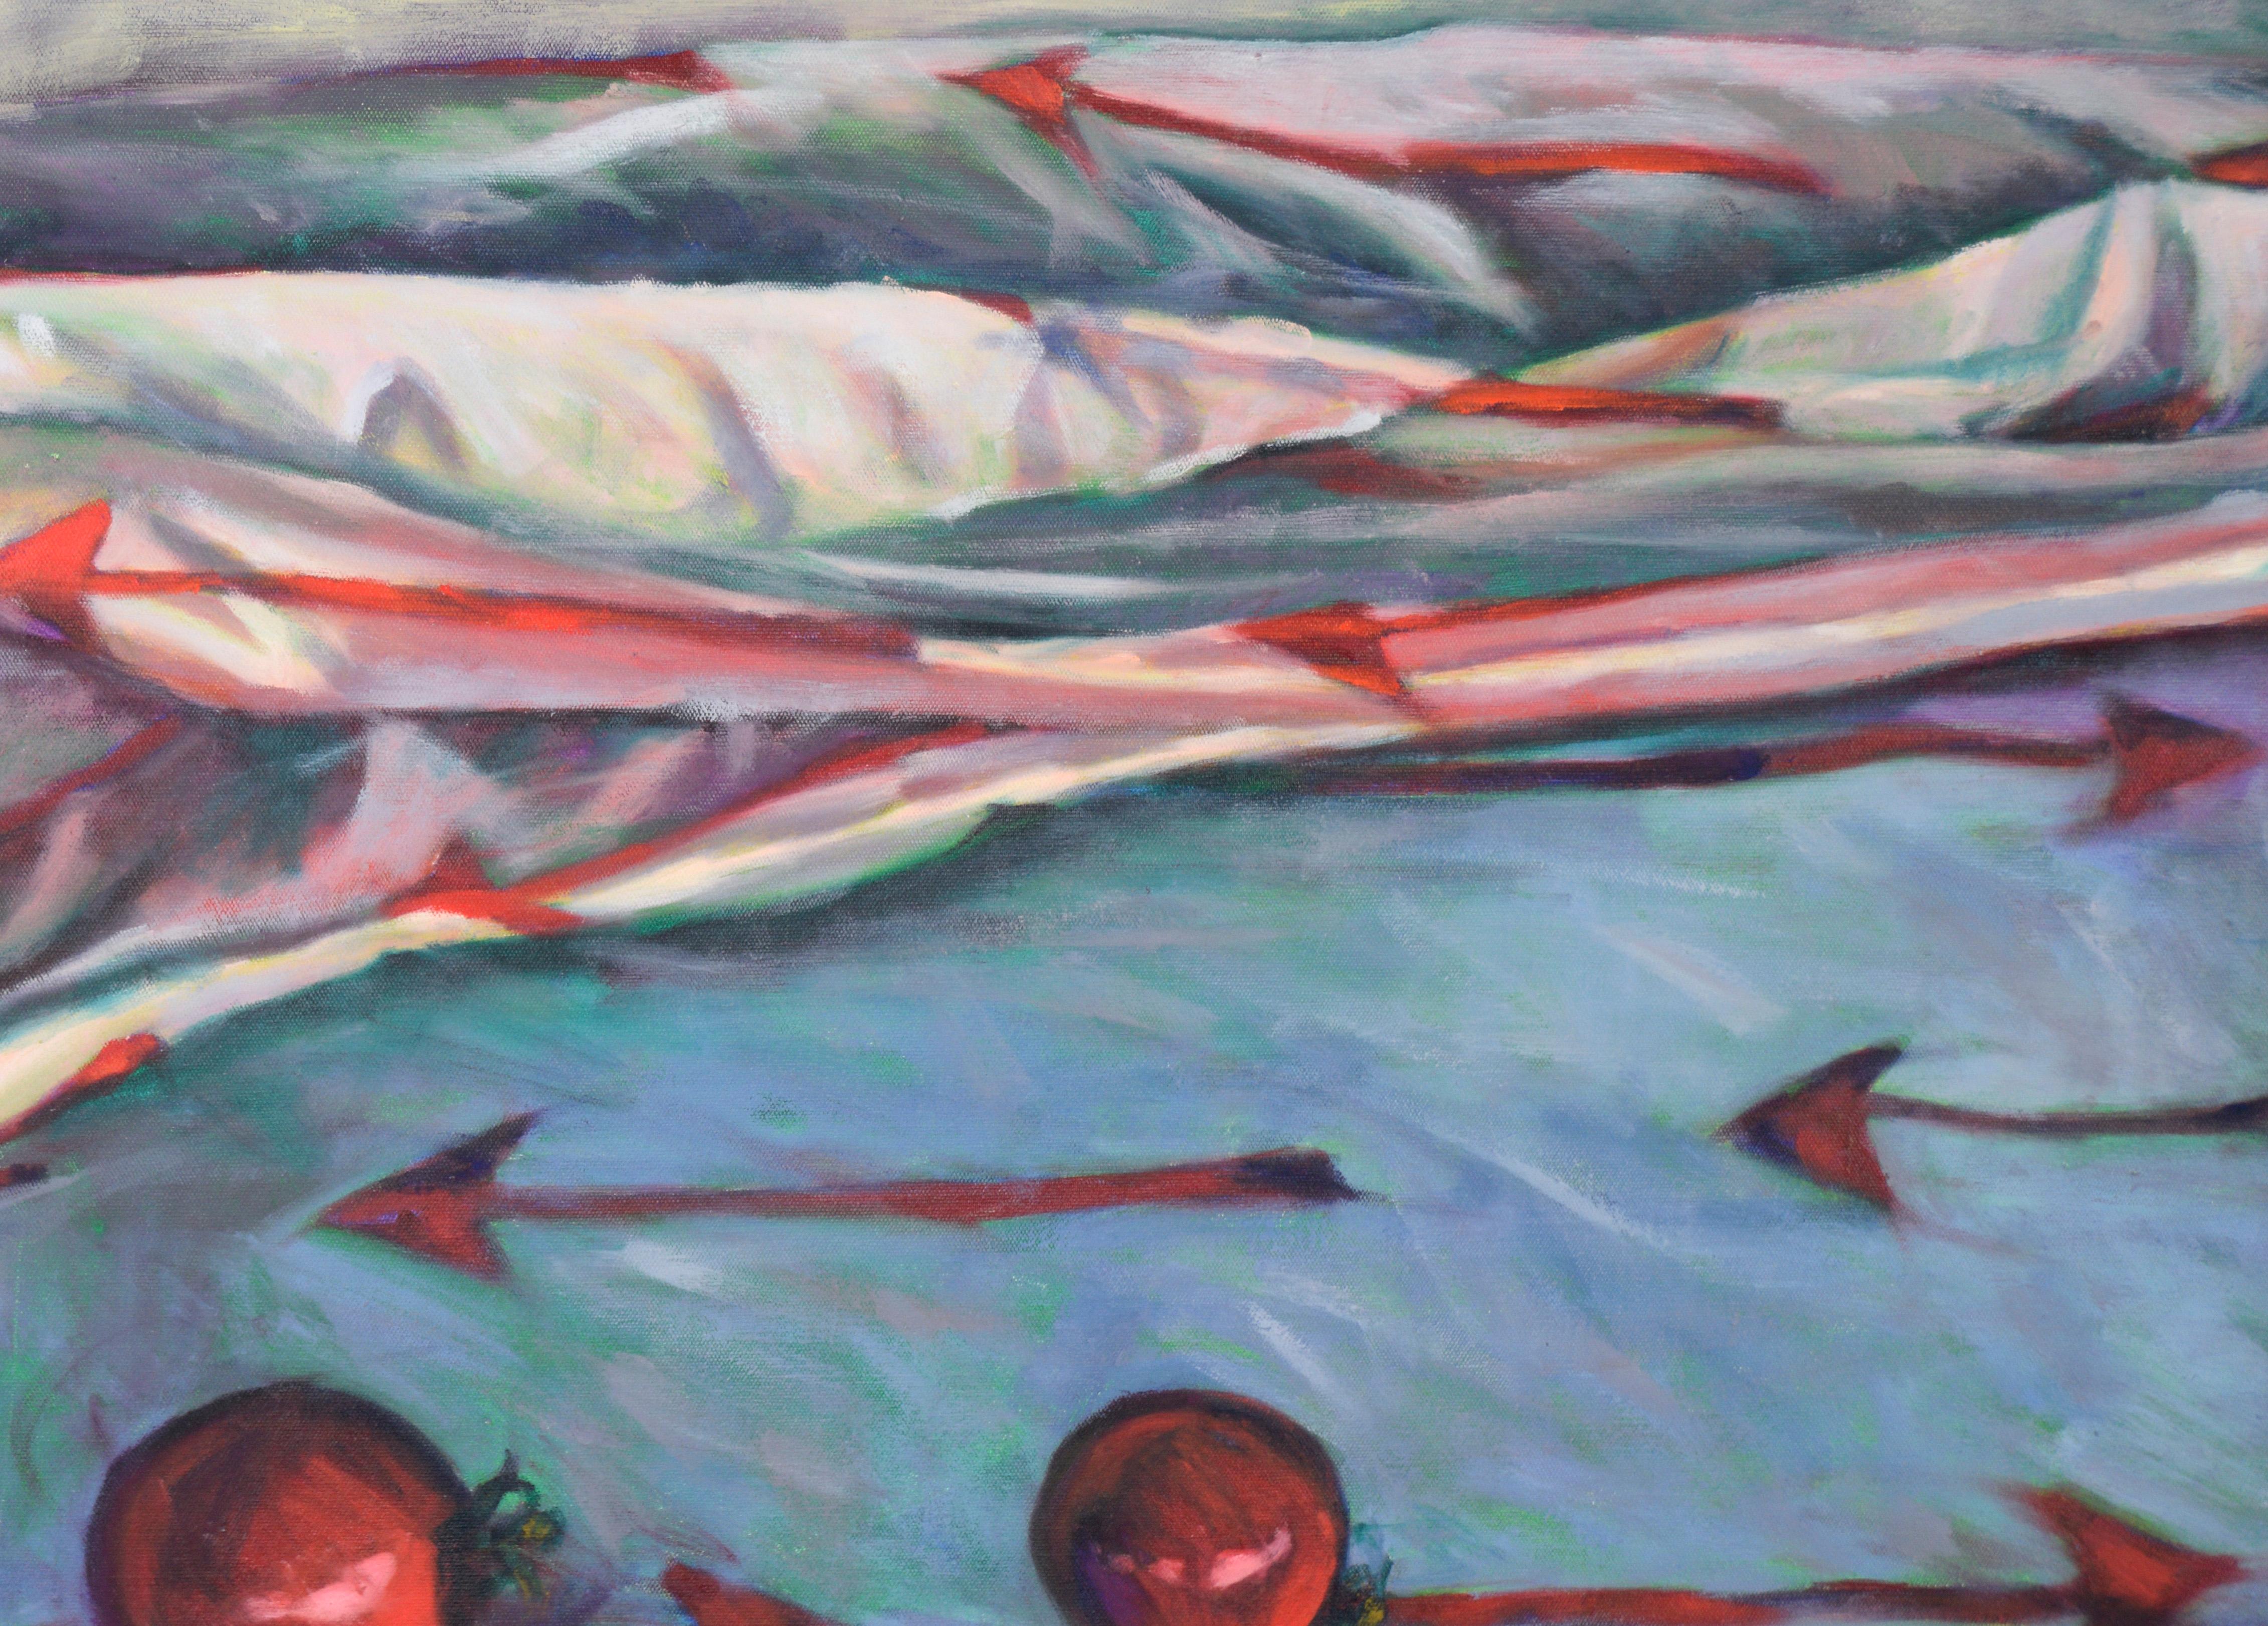 Pfeile und Kirschtomaten - Zeitgenössisches Stillleben in Öl auf Leinwand – Painting von Unknown